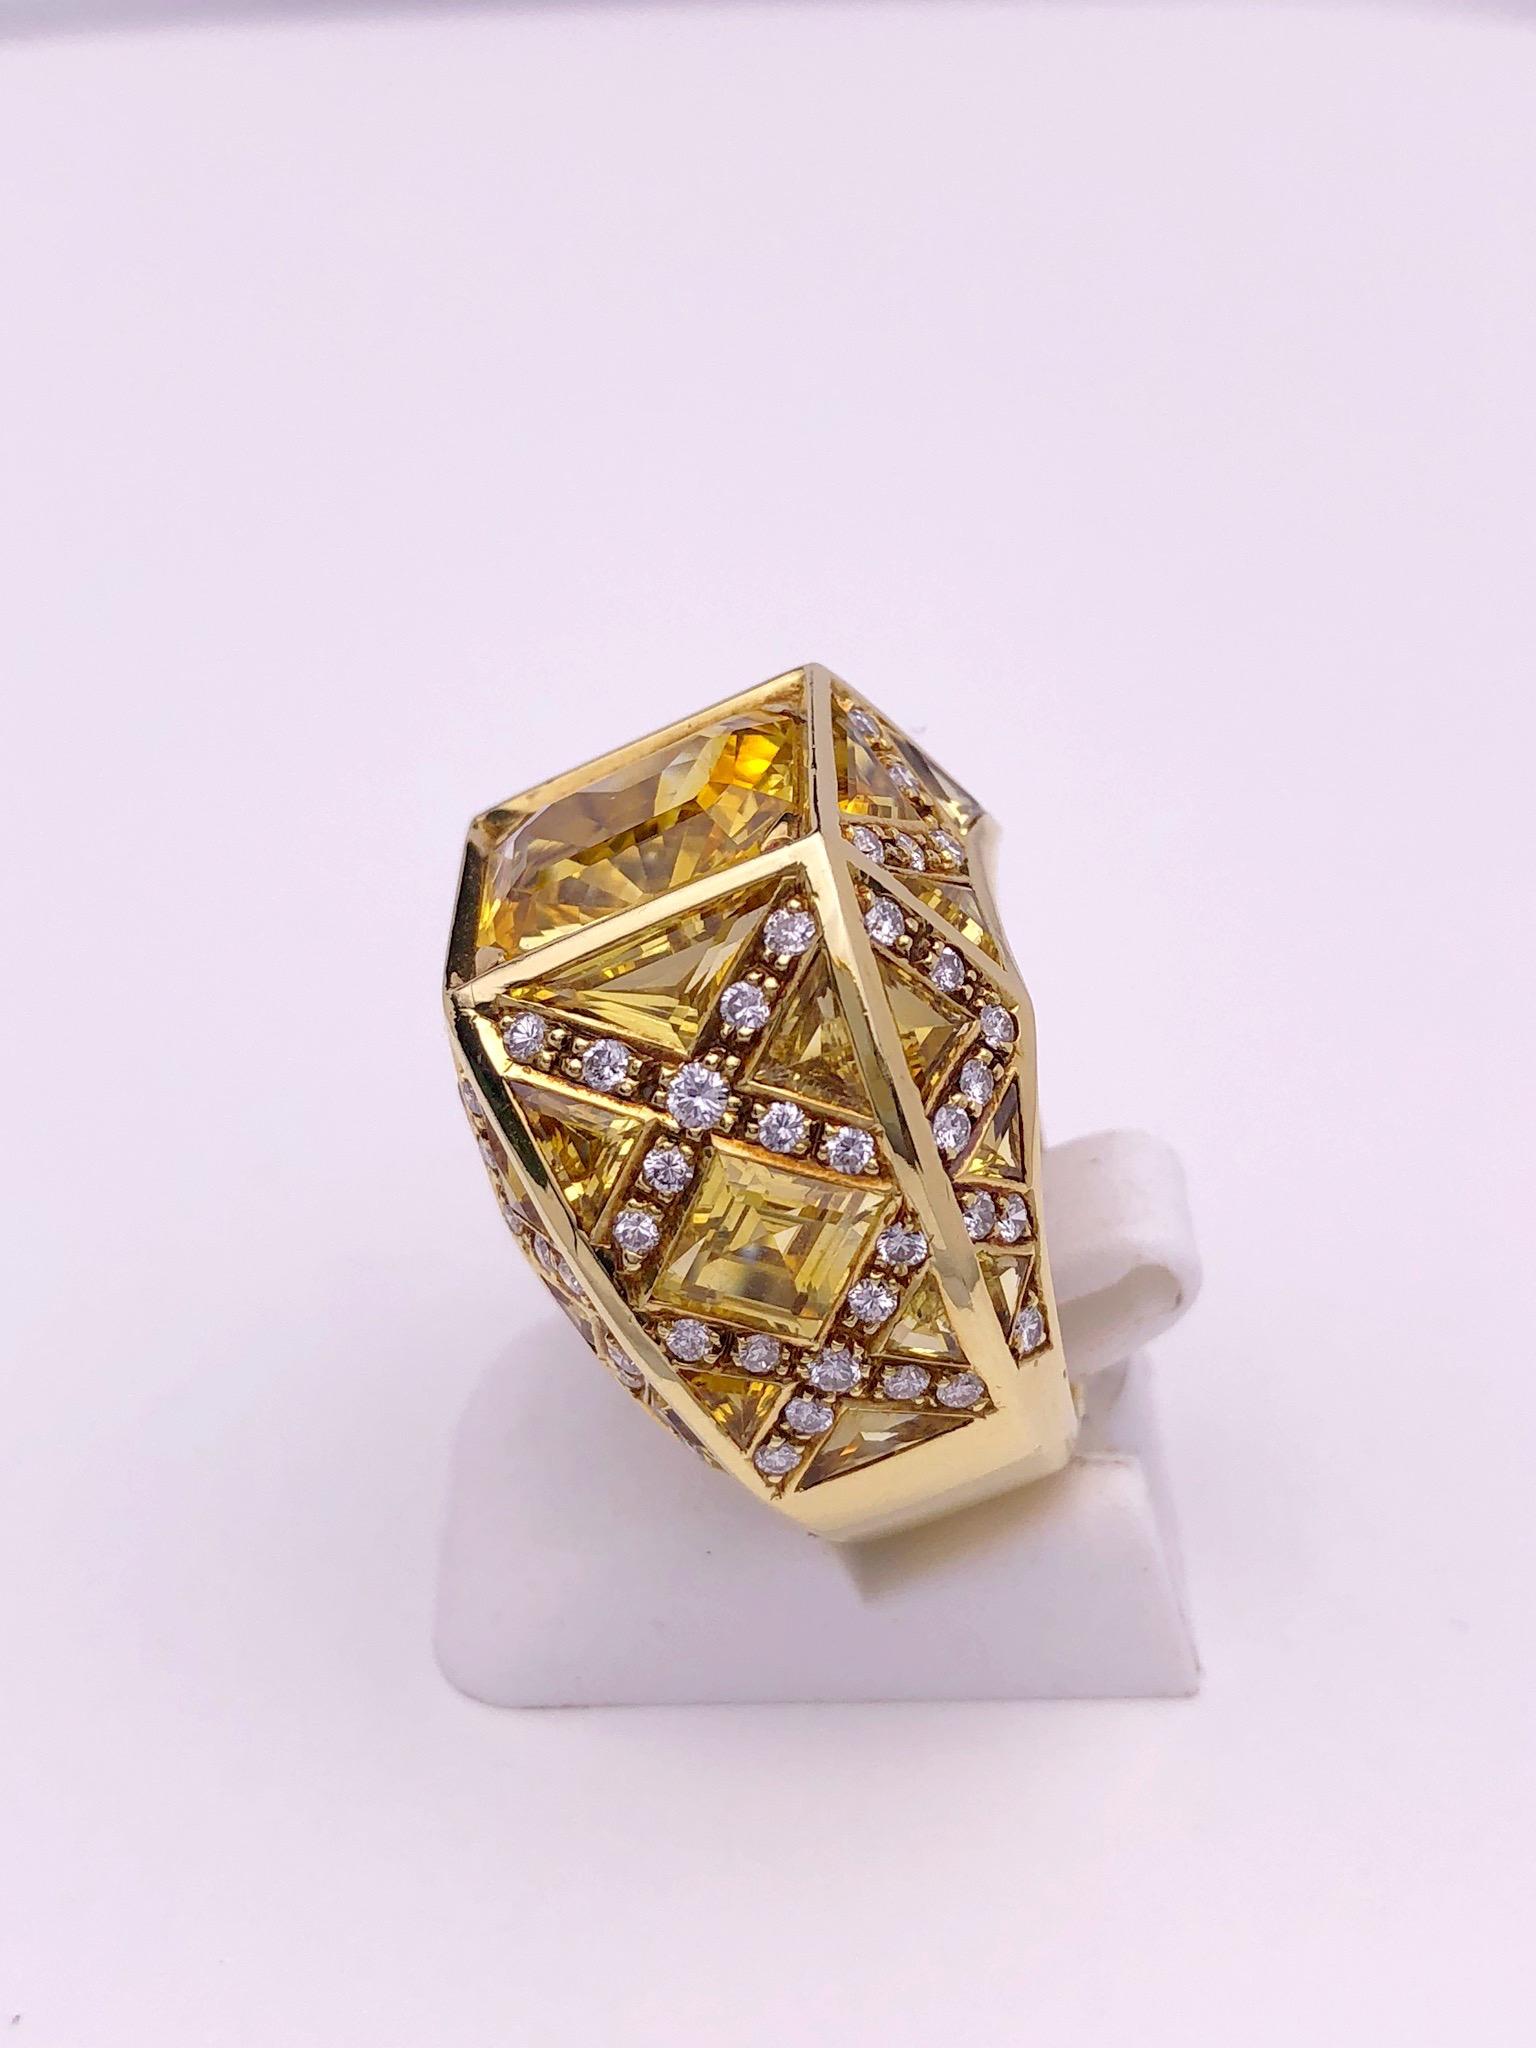 Rodney Rayner ist bekannt für seinen einzigartigen Stil. Dieser Ring ist das perfekte Beispiel dafür. Der Höhepunkt dieses Rings, der vollständig aus 18-karätigem Gelbgold gefertigt ist, ist der prächtige gelbe Saphir mit 5,23 Karat im